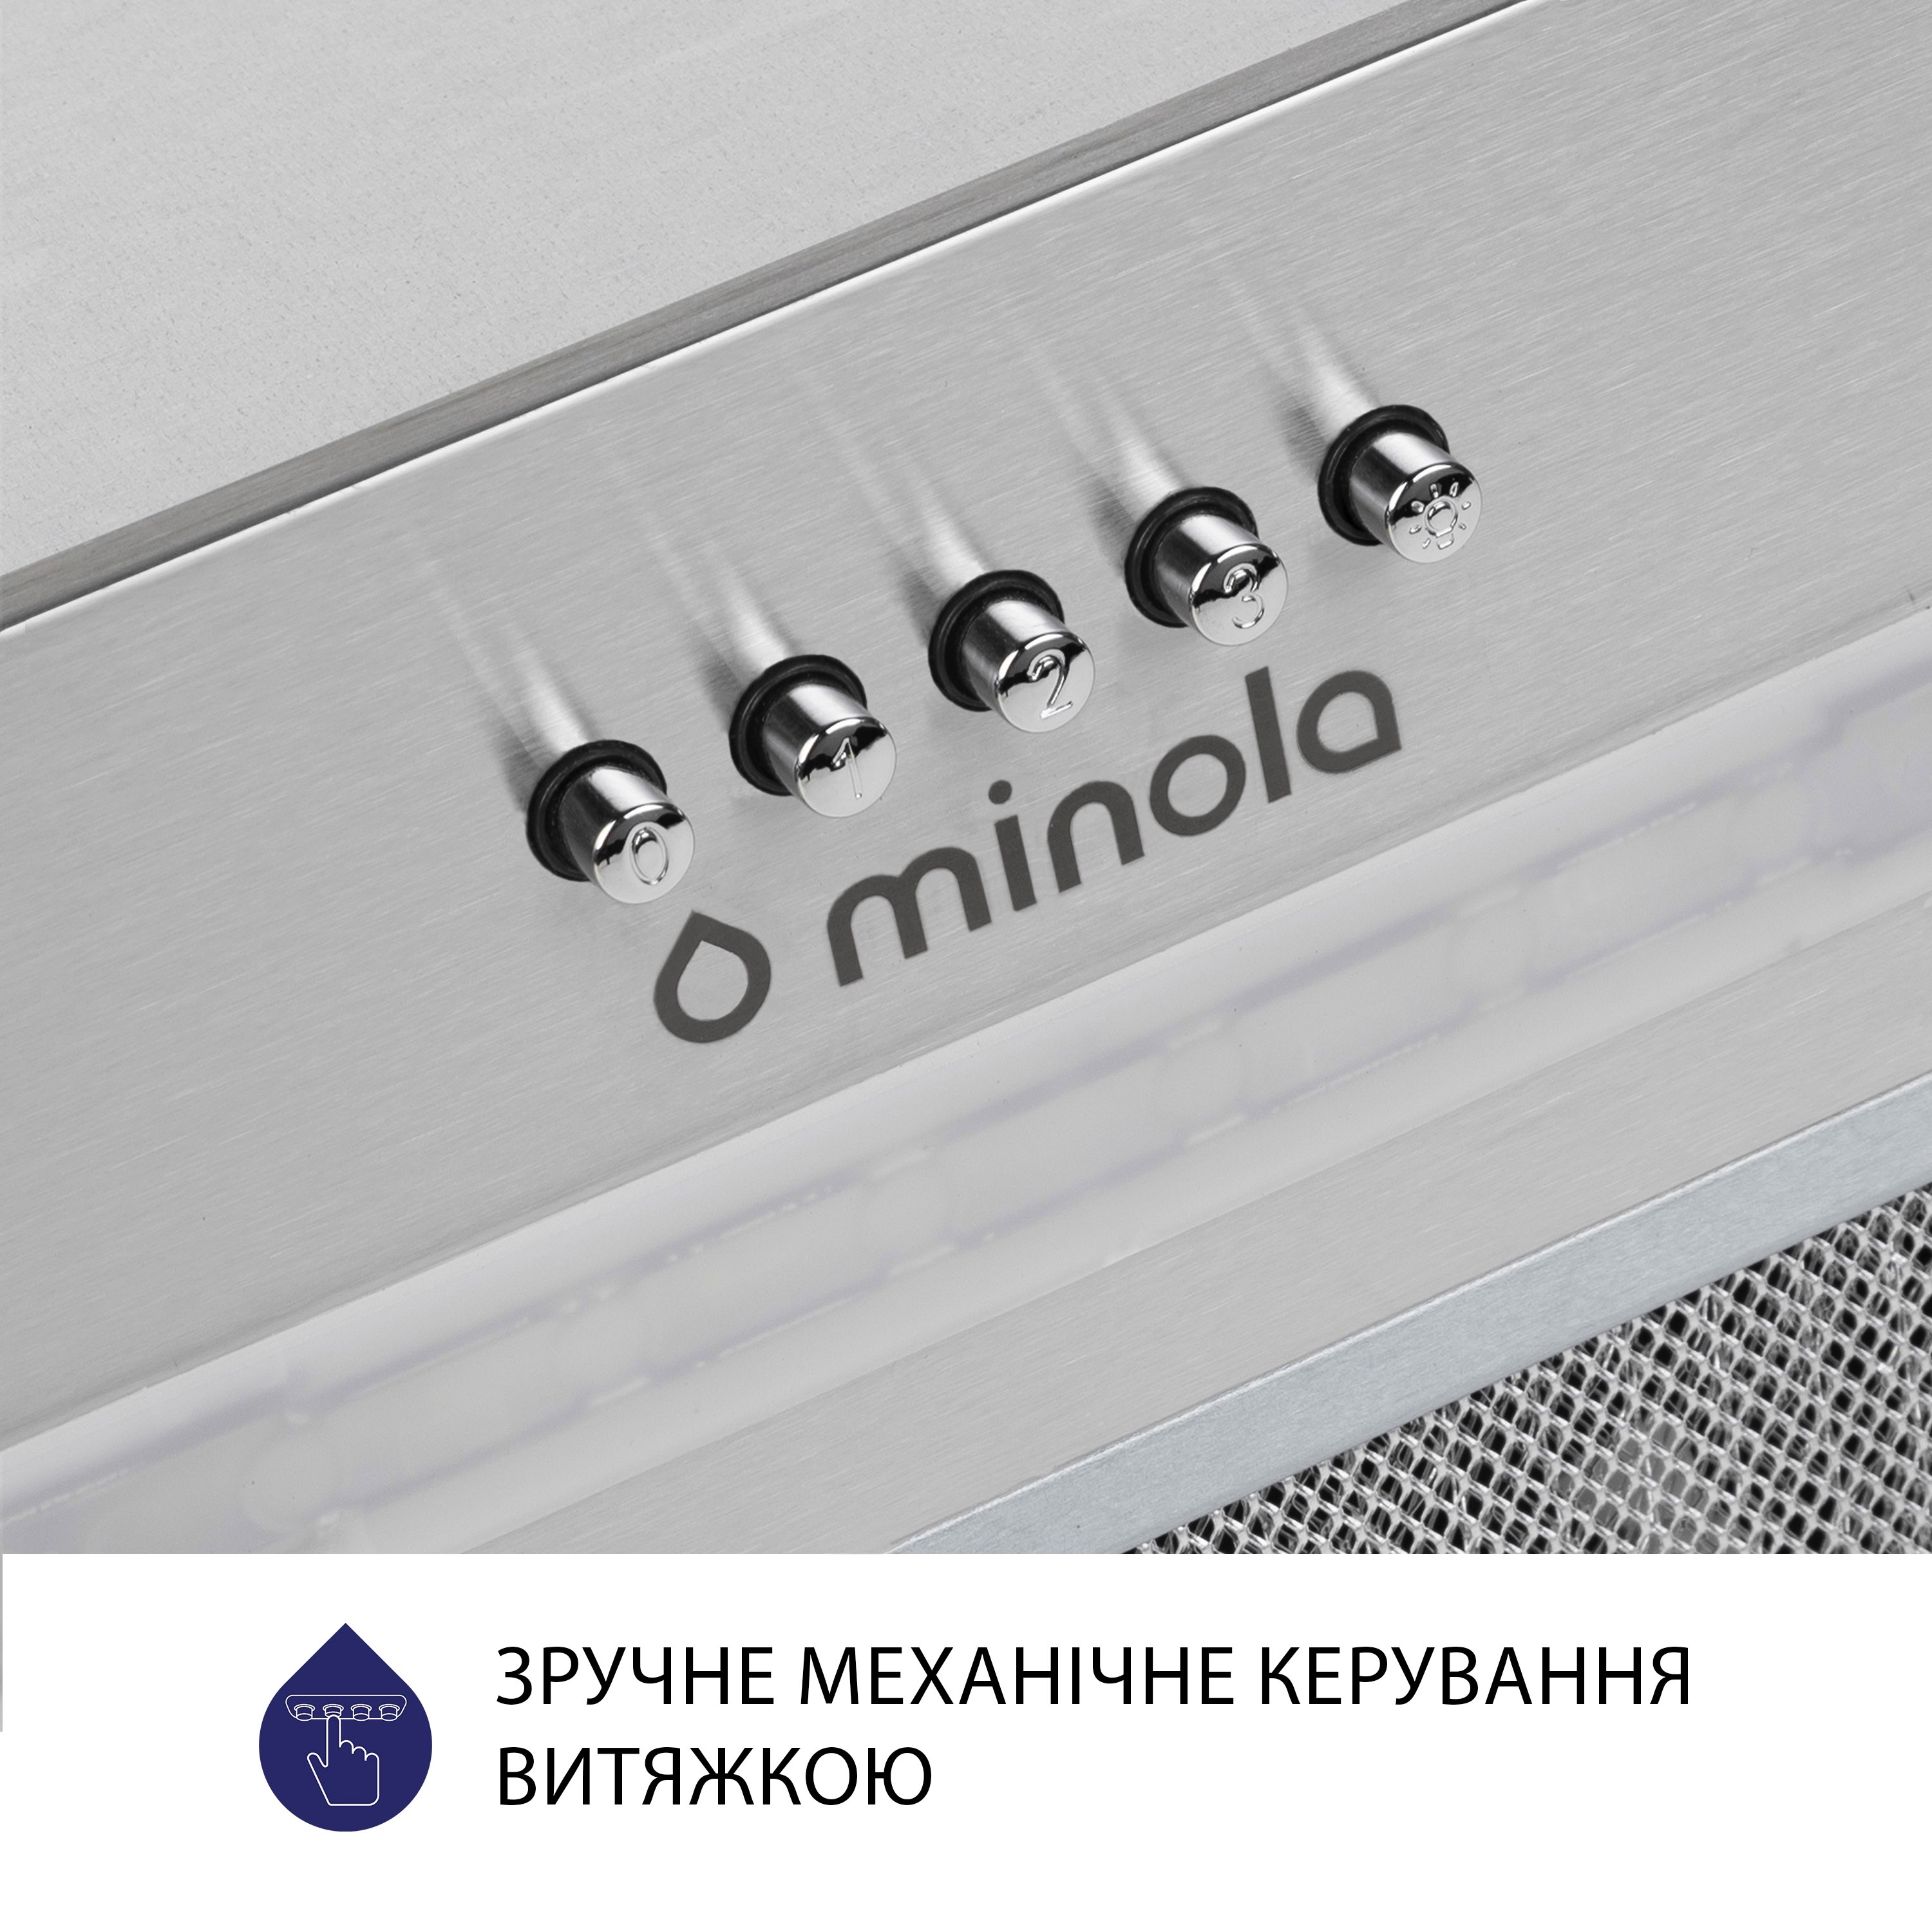 Витяжка кухонная полновстраиваемая Minola HBI 5623 I 1000 LED инструкция - изображение 6